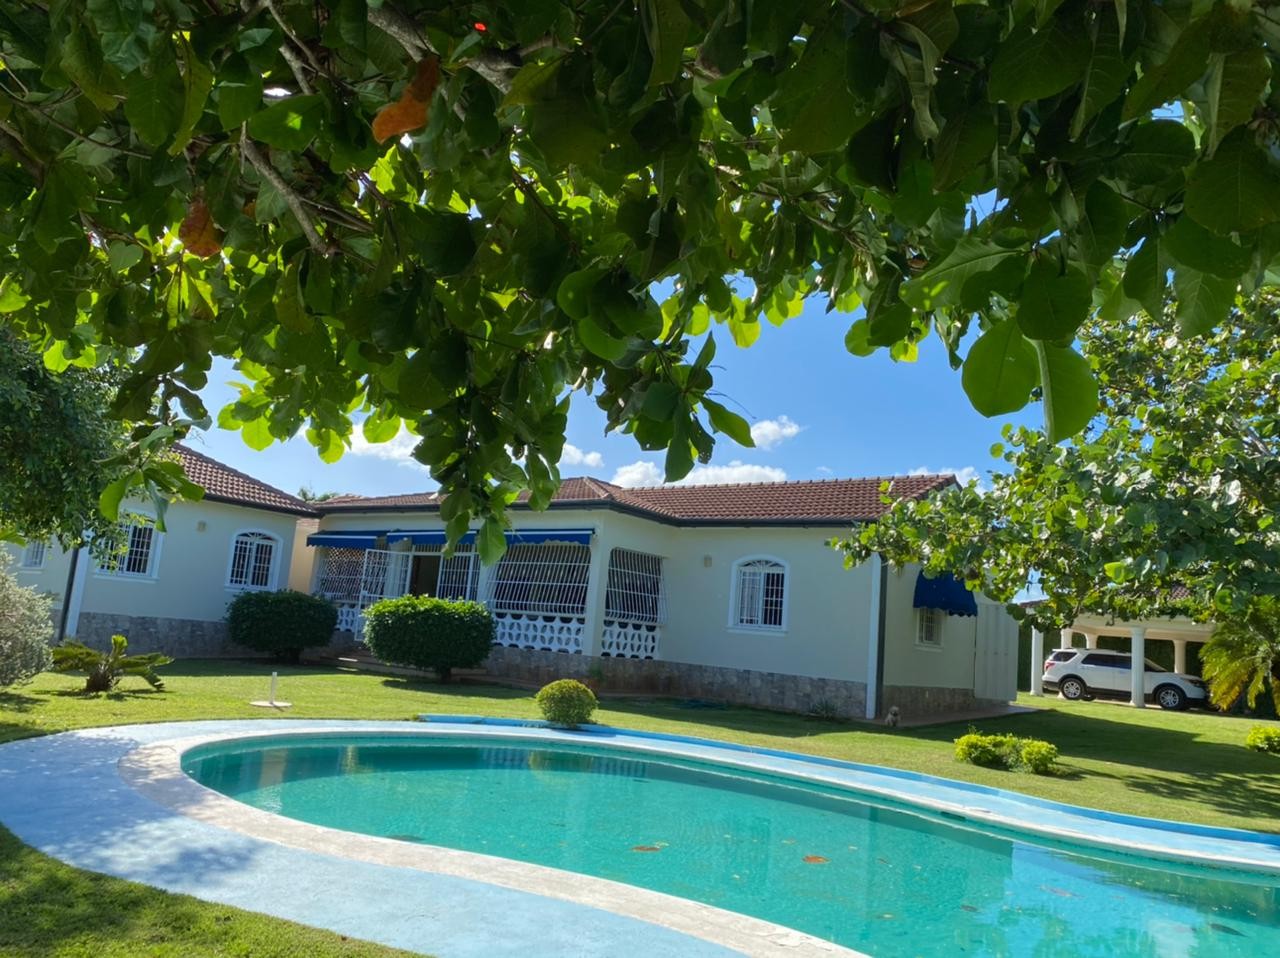 casas vacacionales y villas - Hermosa y super amplia casa en venta ubicada en Costambar, Puerto Plata, R.D.
